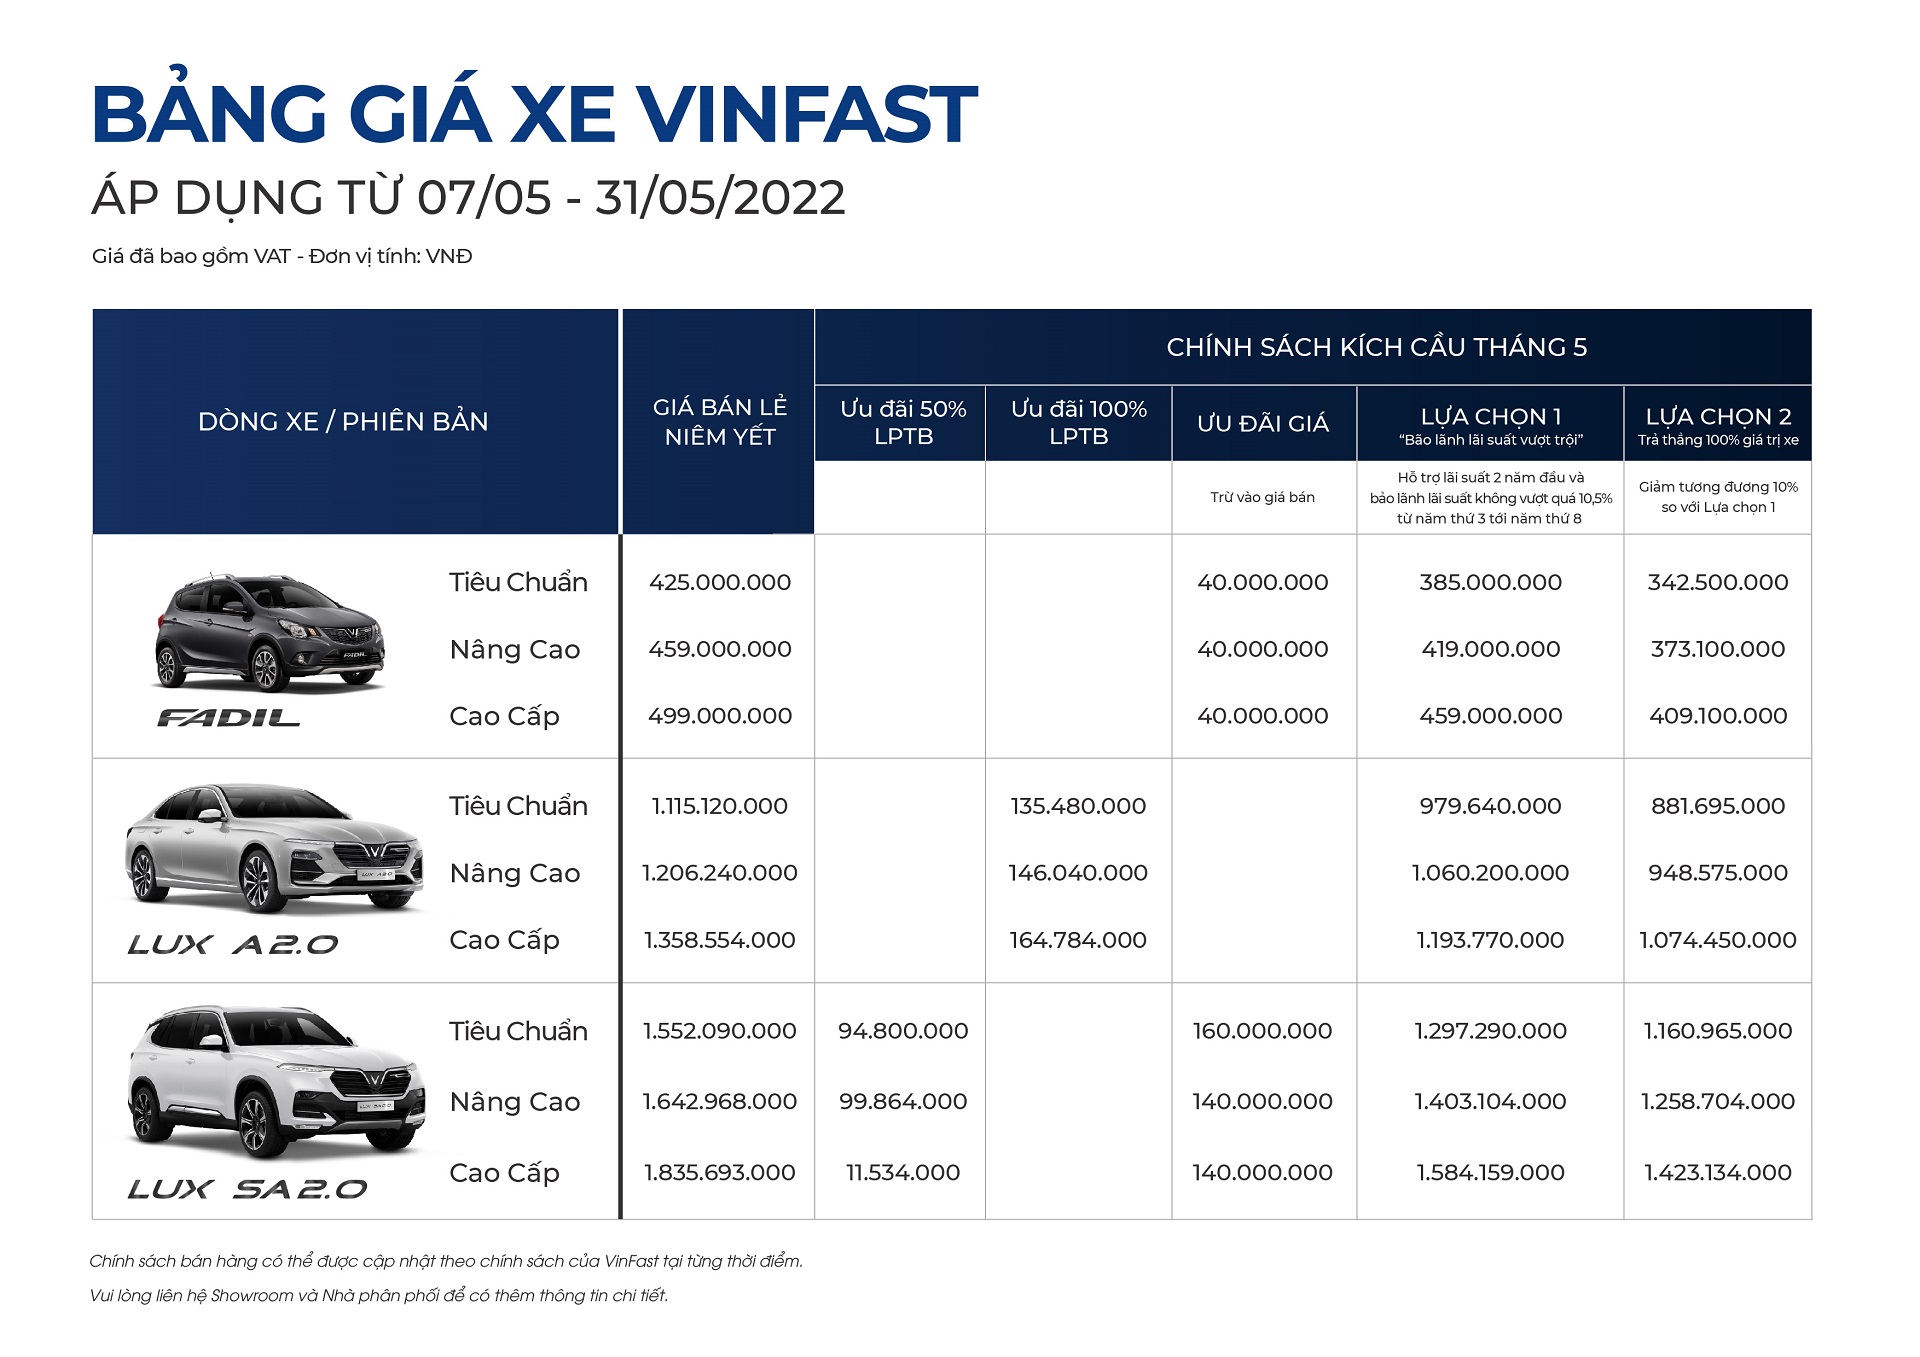 VinFast công bố kết quả kinh doanh ô tô tháng 4/2022